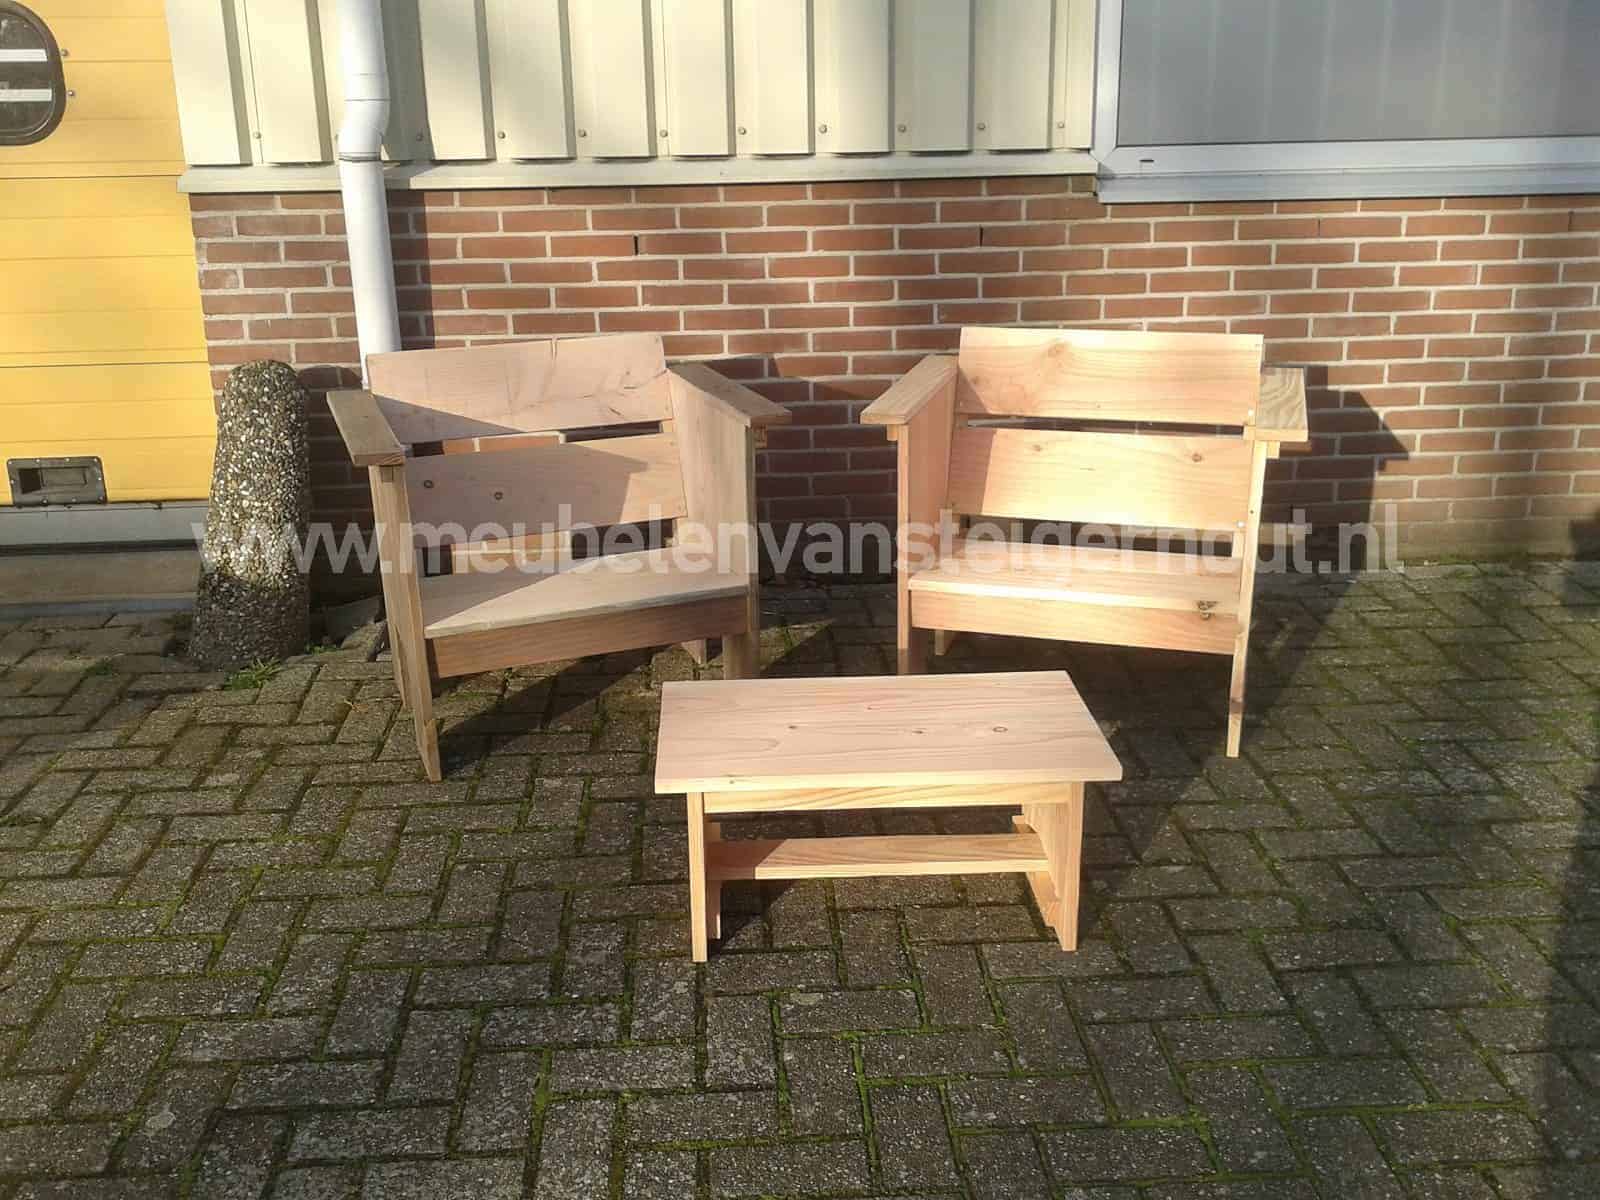 Schuine streep auteursrechten Structureel Loungestoel douglas steigerhout | Meubelen van Steigerhout